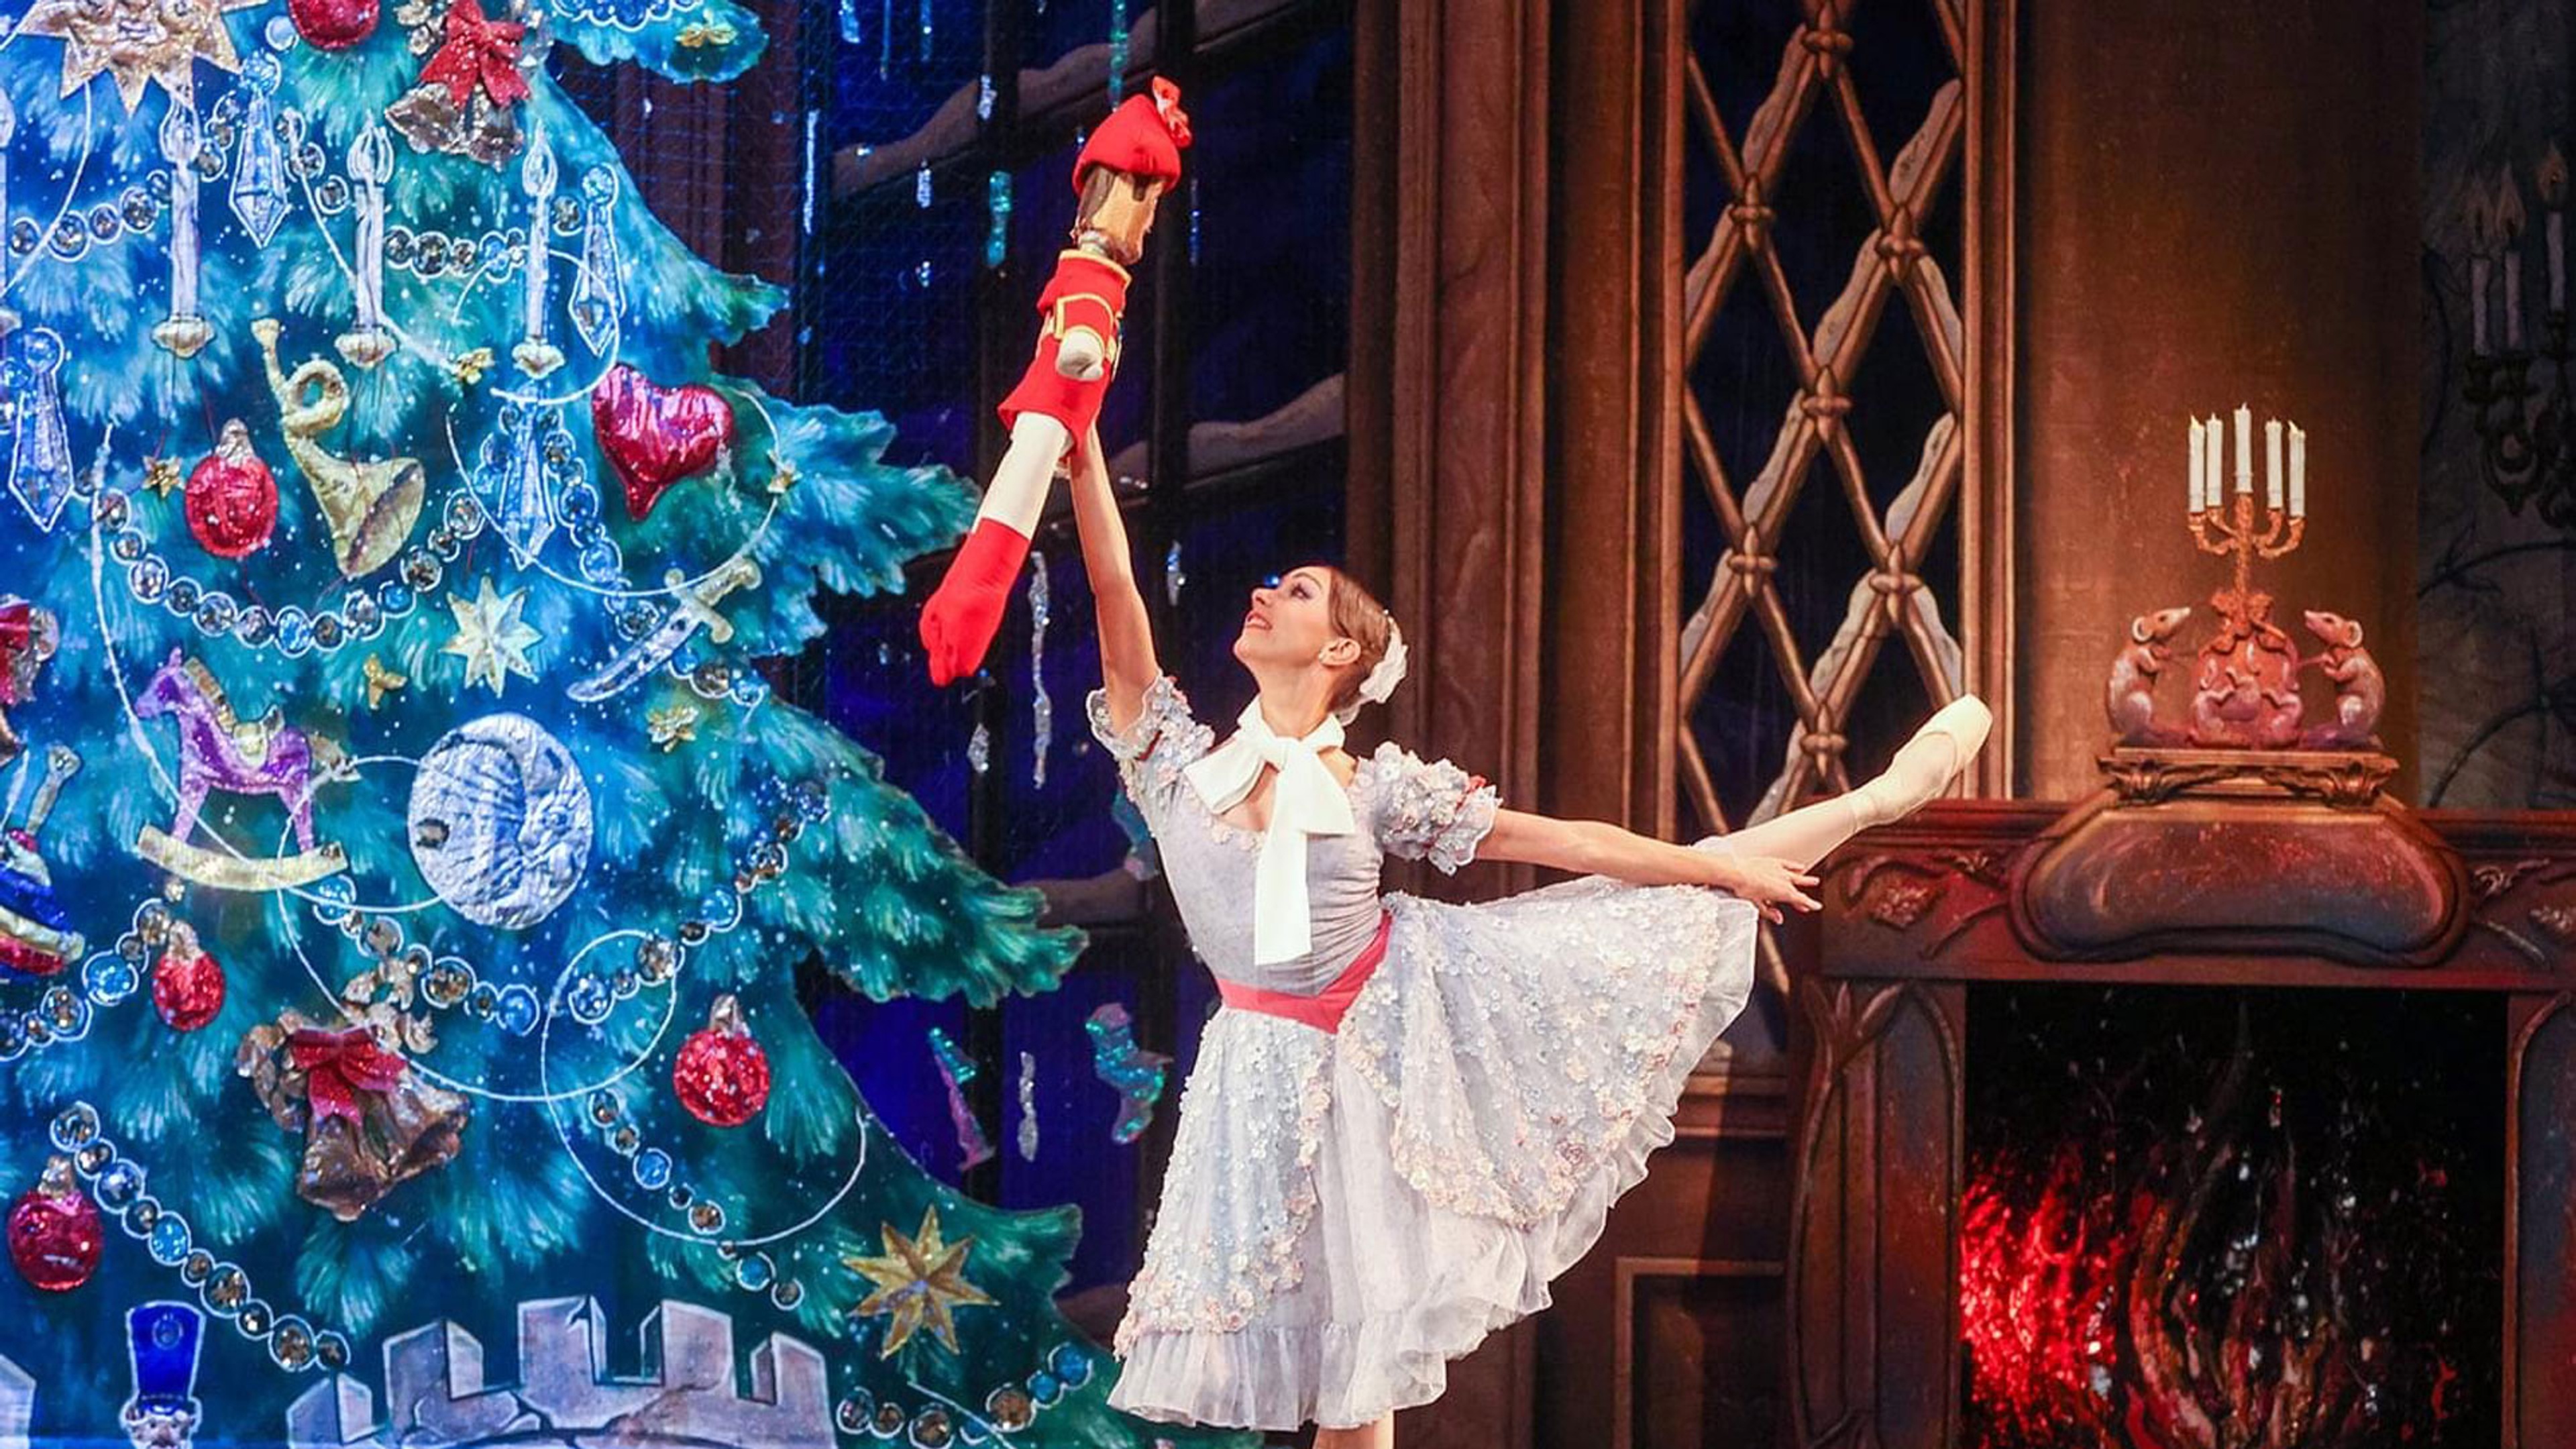 En balettdansös dansar framför en julgran och en öppen brasa